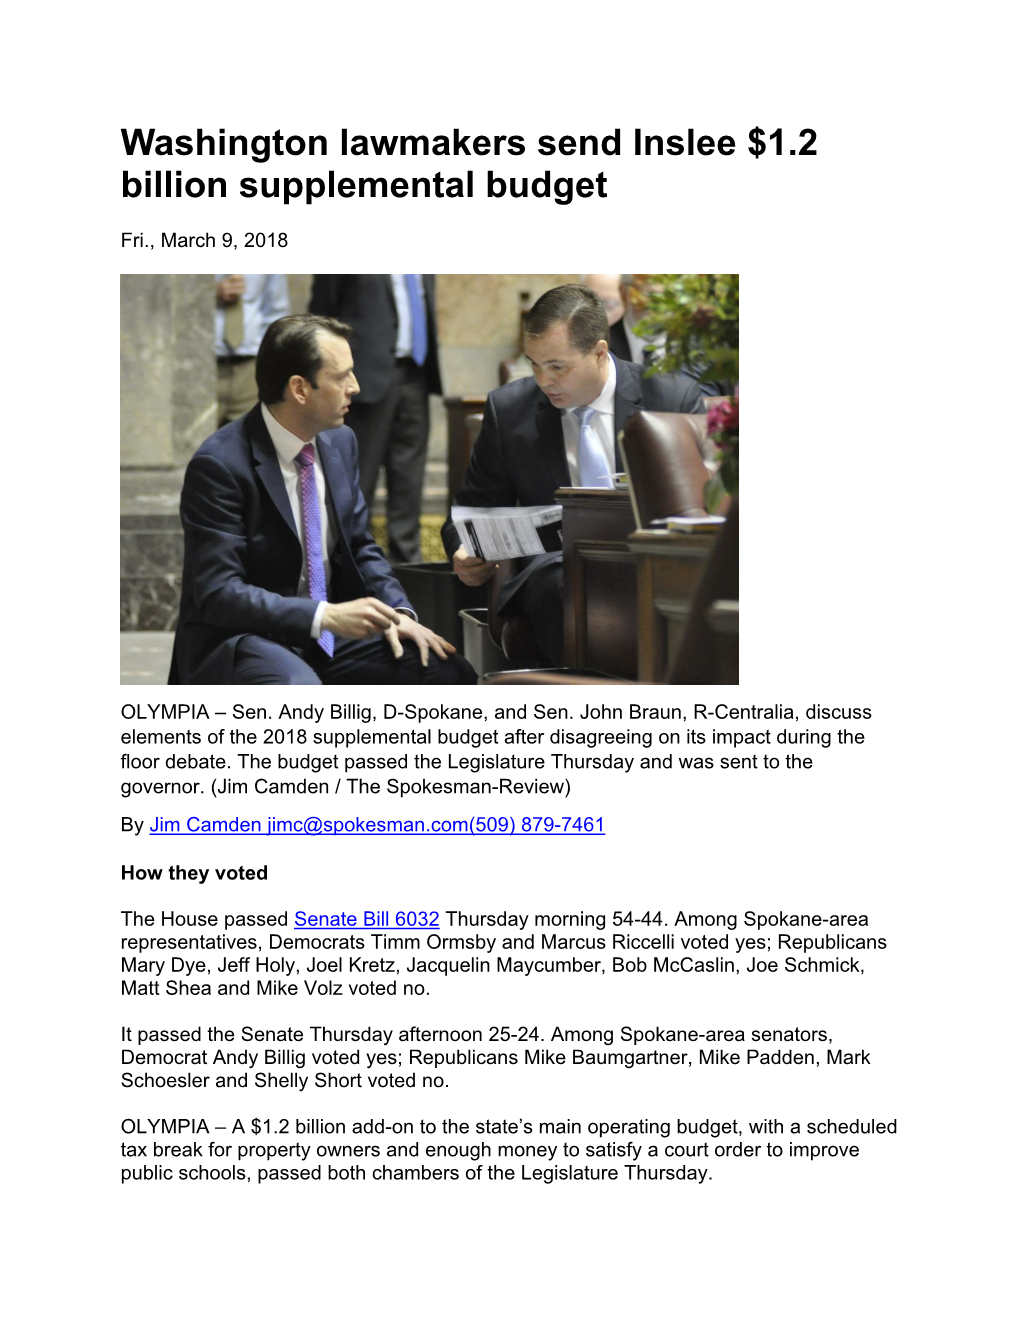 Washington Lawmakers Send Inslee $1.2 Billion Supplemental Budget